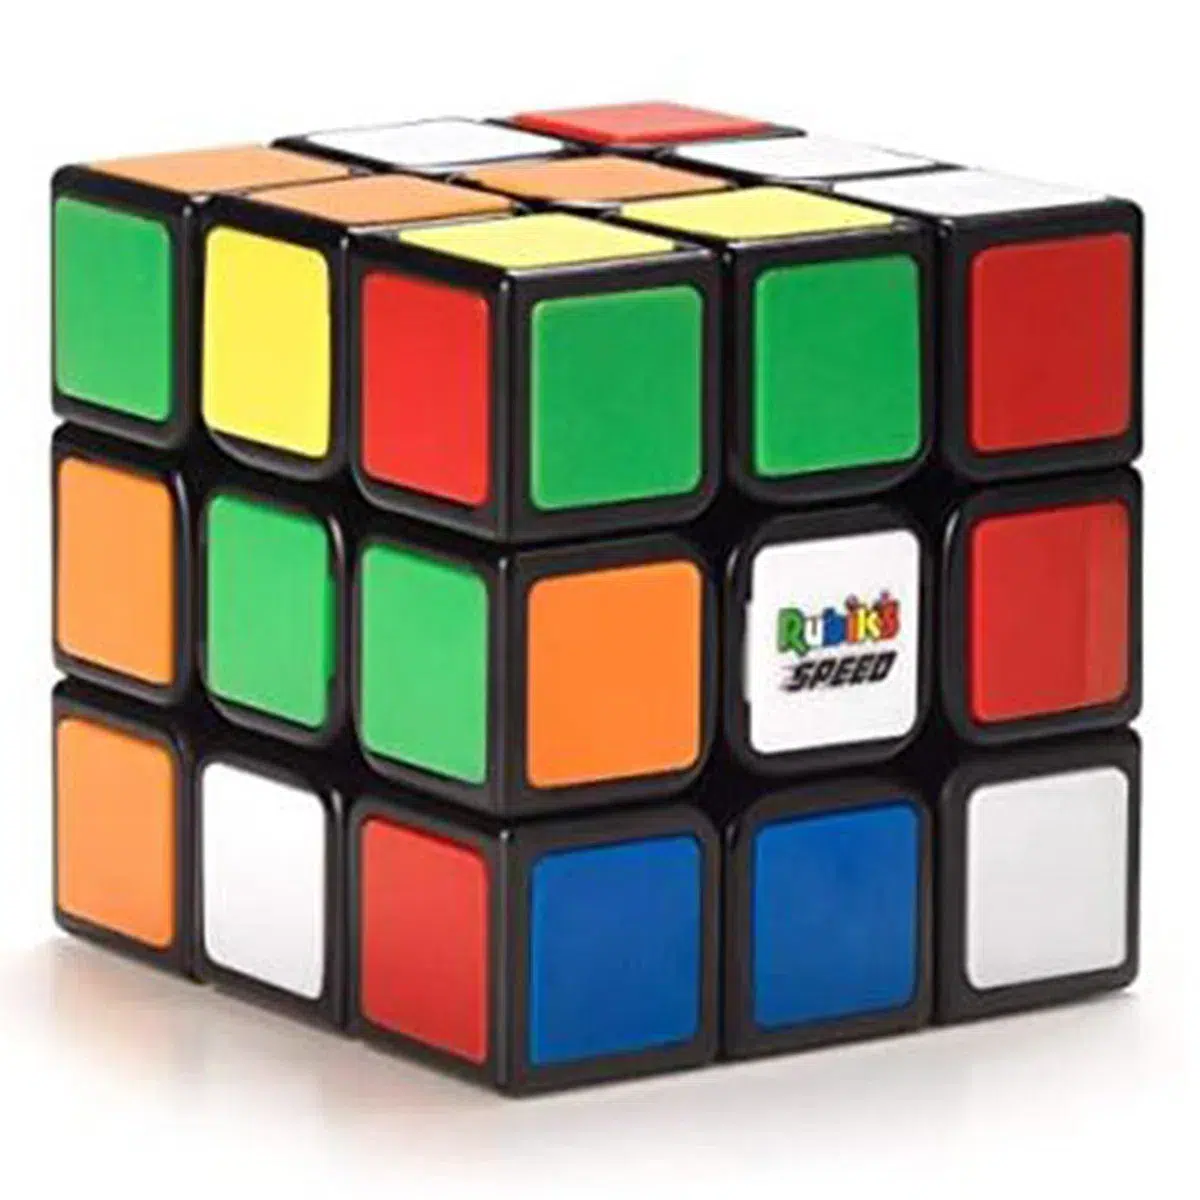 Neuer Rubik's Speed Cube - Rubik's 3x3 Speed mit Magneten